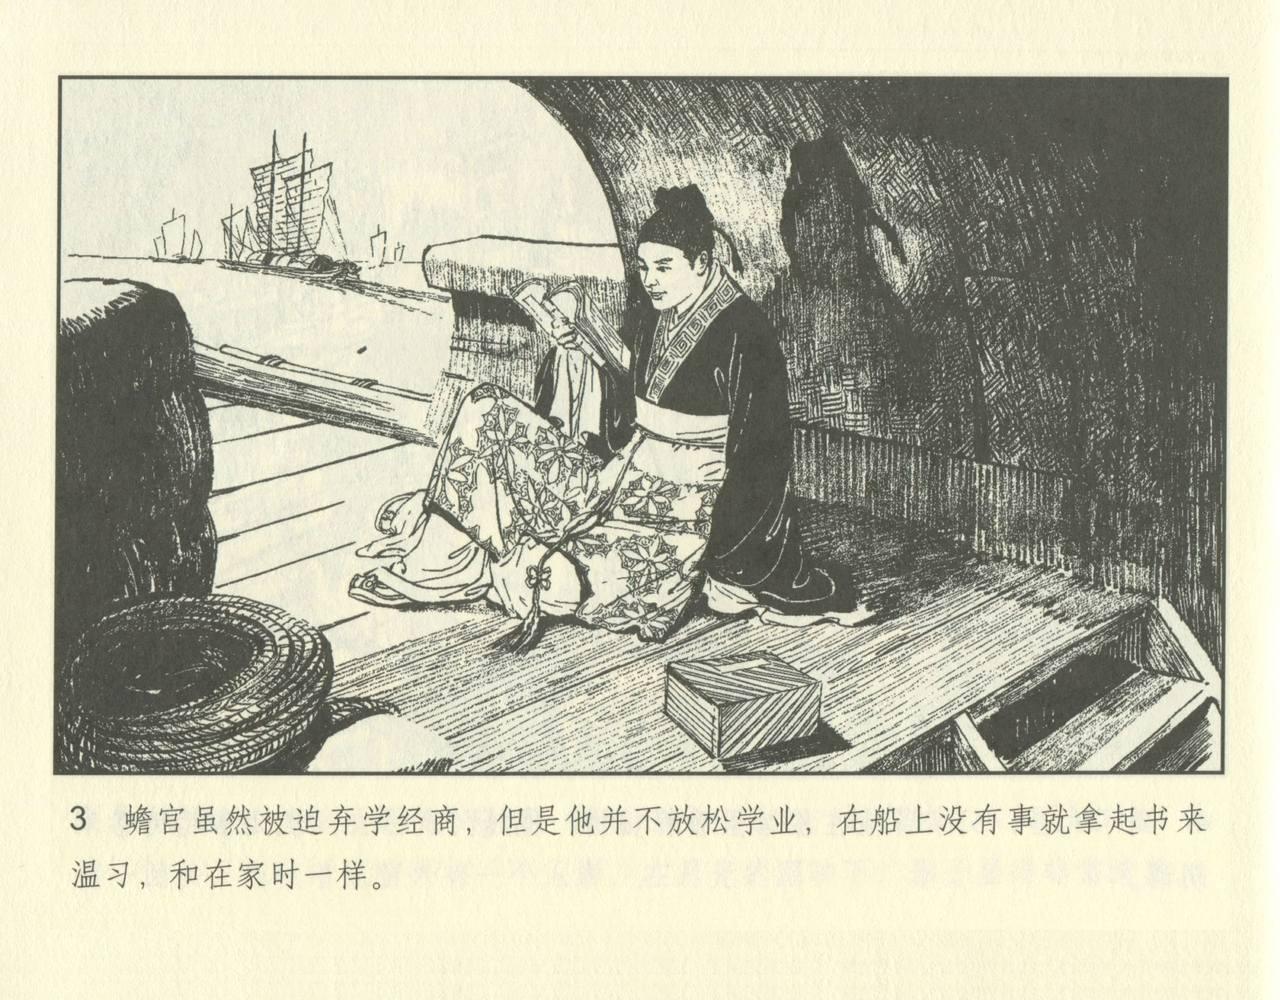 聊斋志异 张玮等绘 天津人民美术出版社 卷二十一 ~ 三十 52